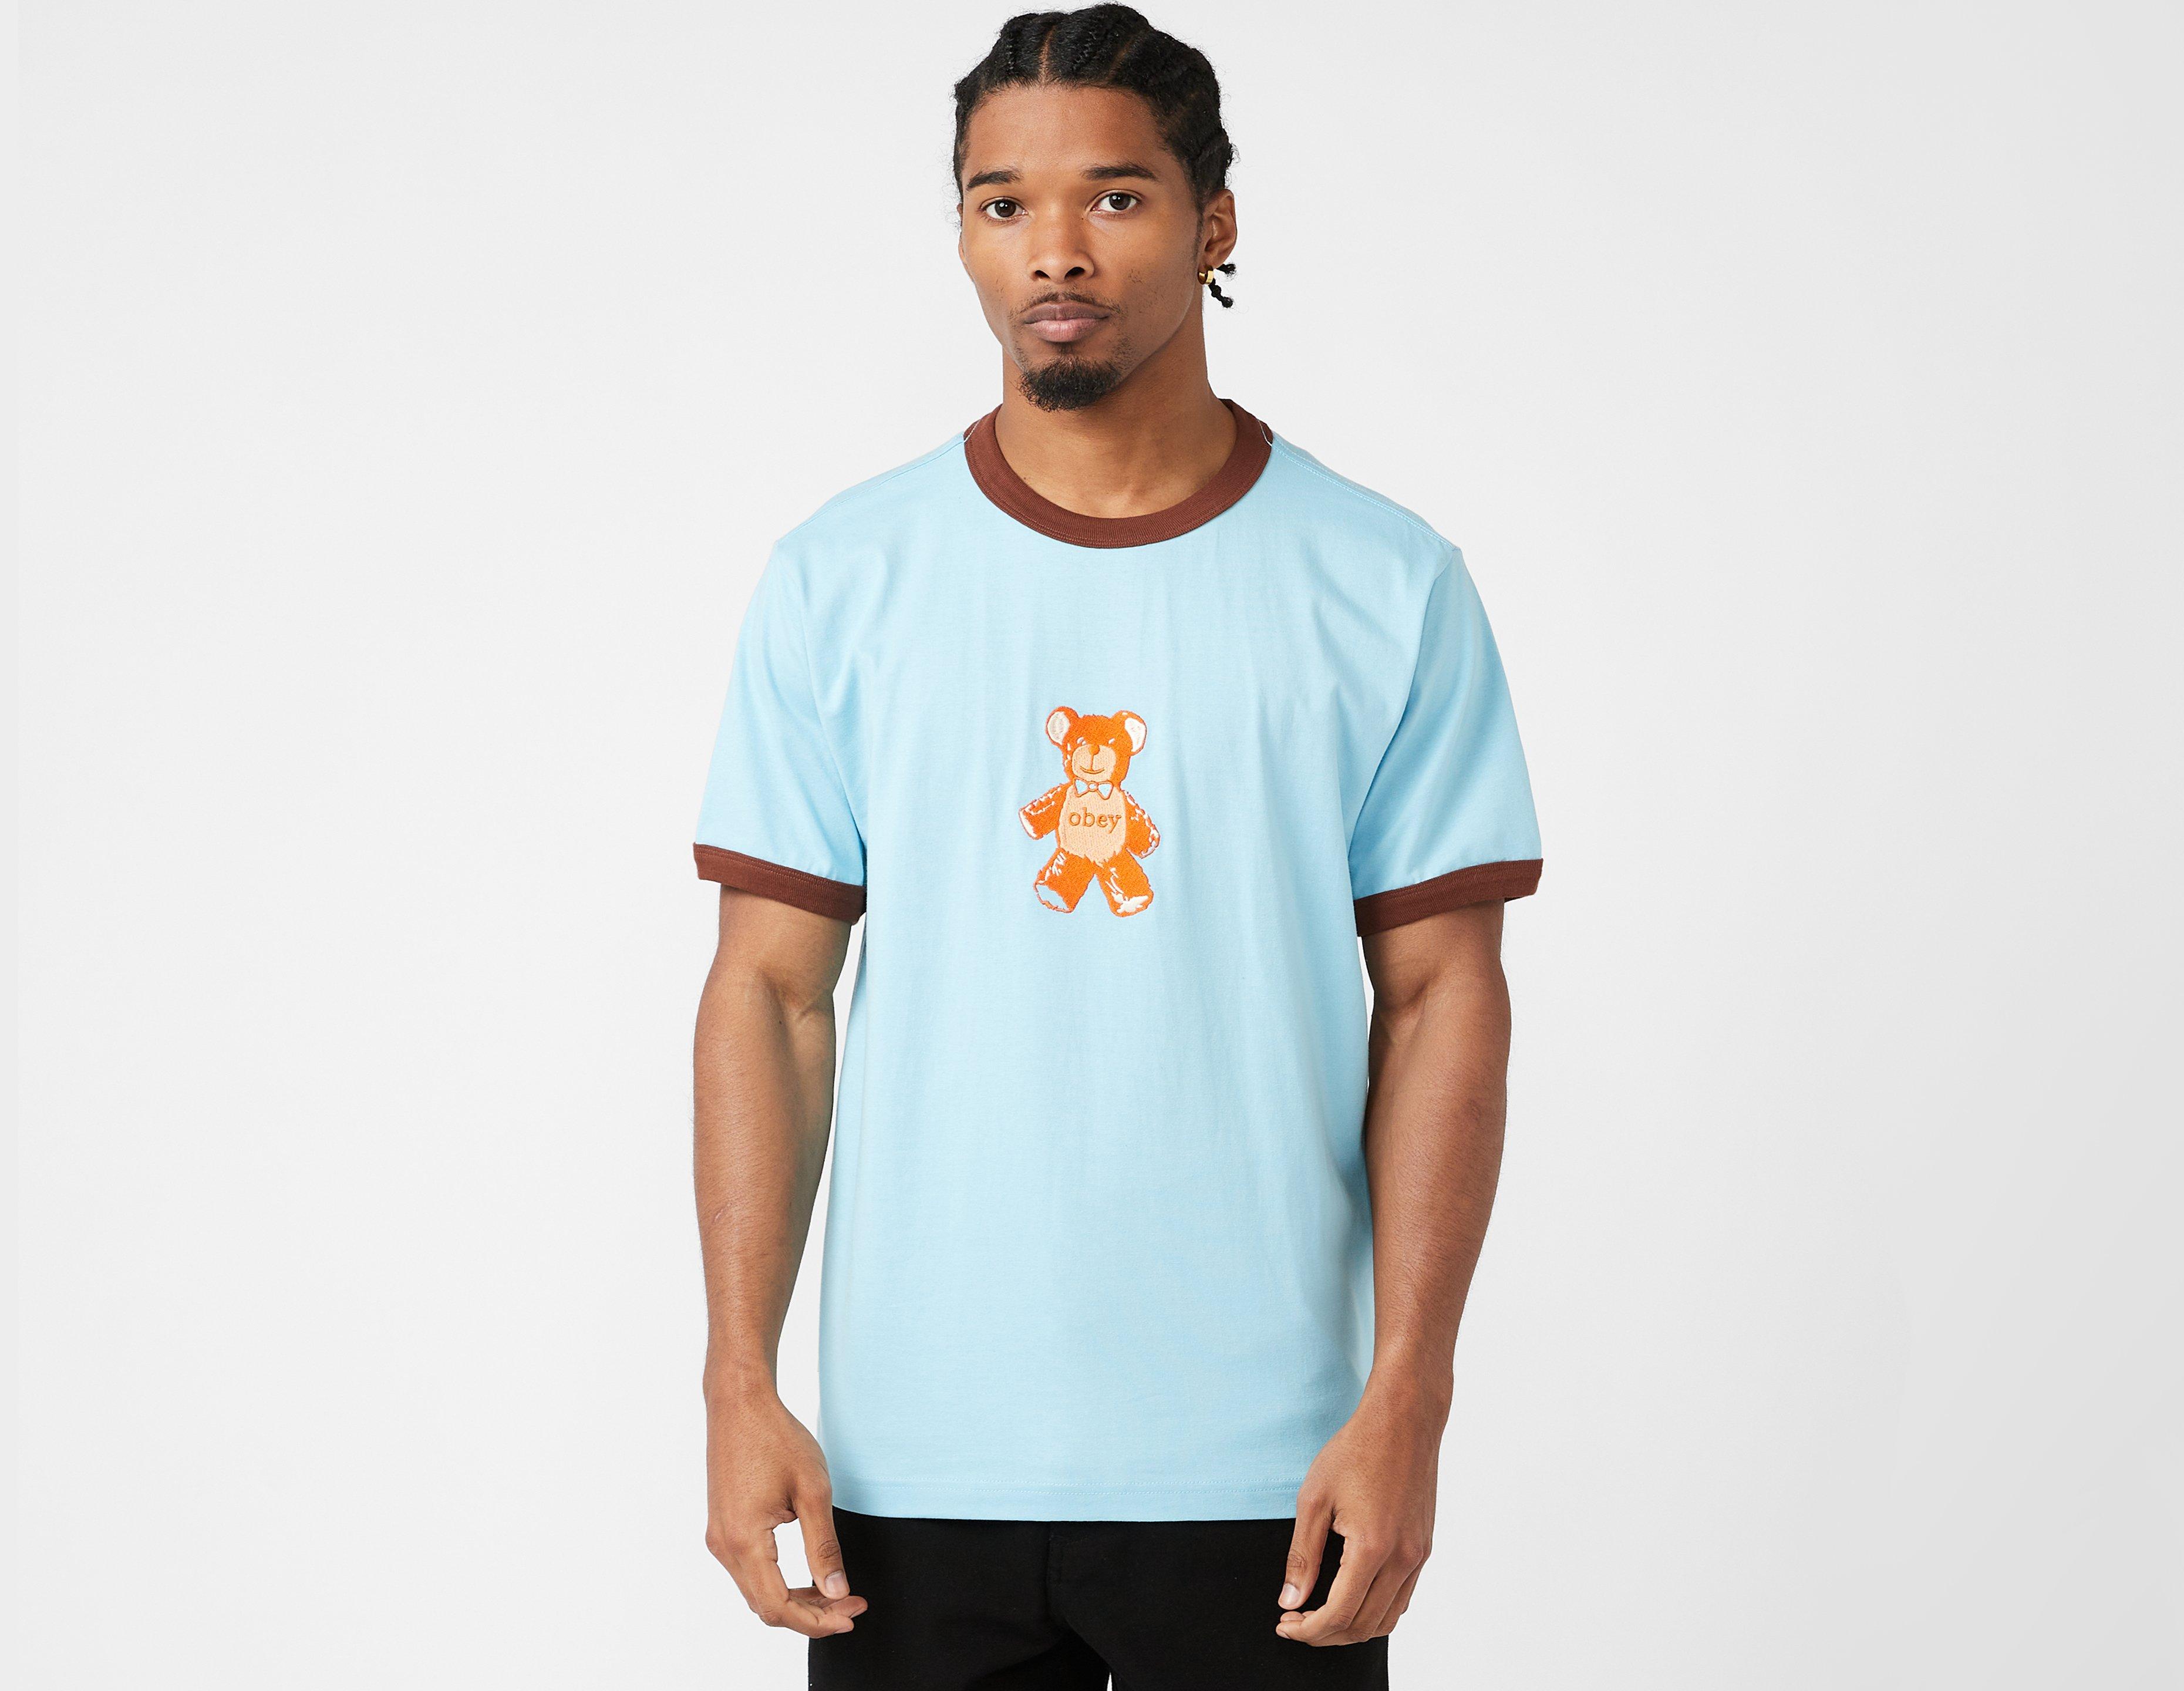 Shirt Blue - Gräddvit med | Healthdesign? i öga tryck - t-shirt mystiskt Ted Obey Ringer T